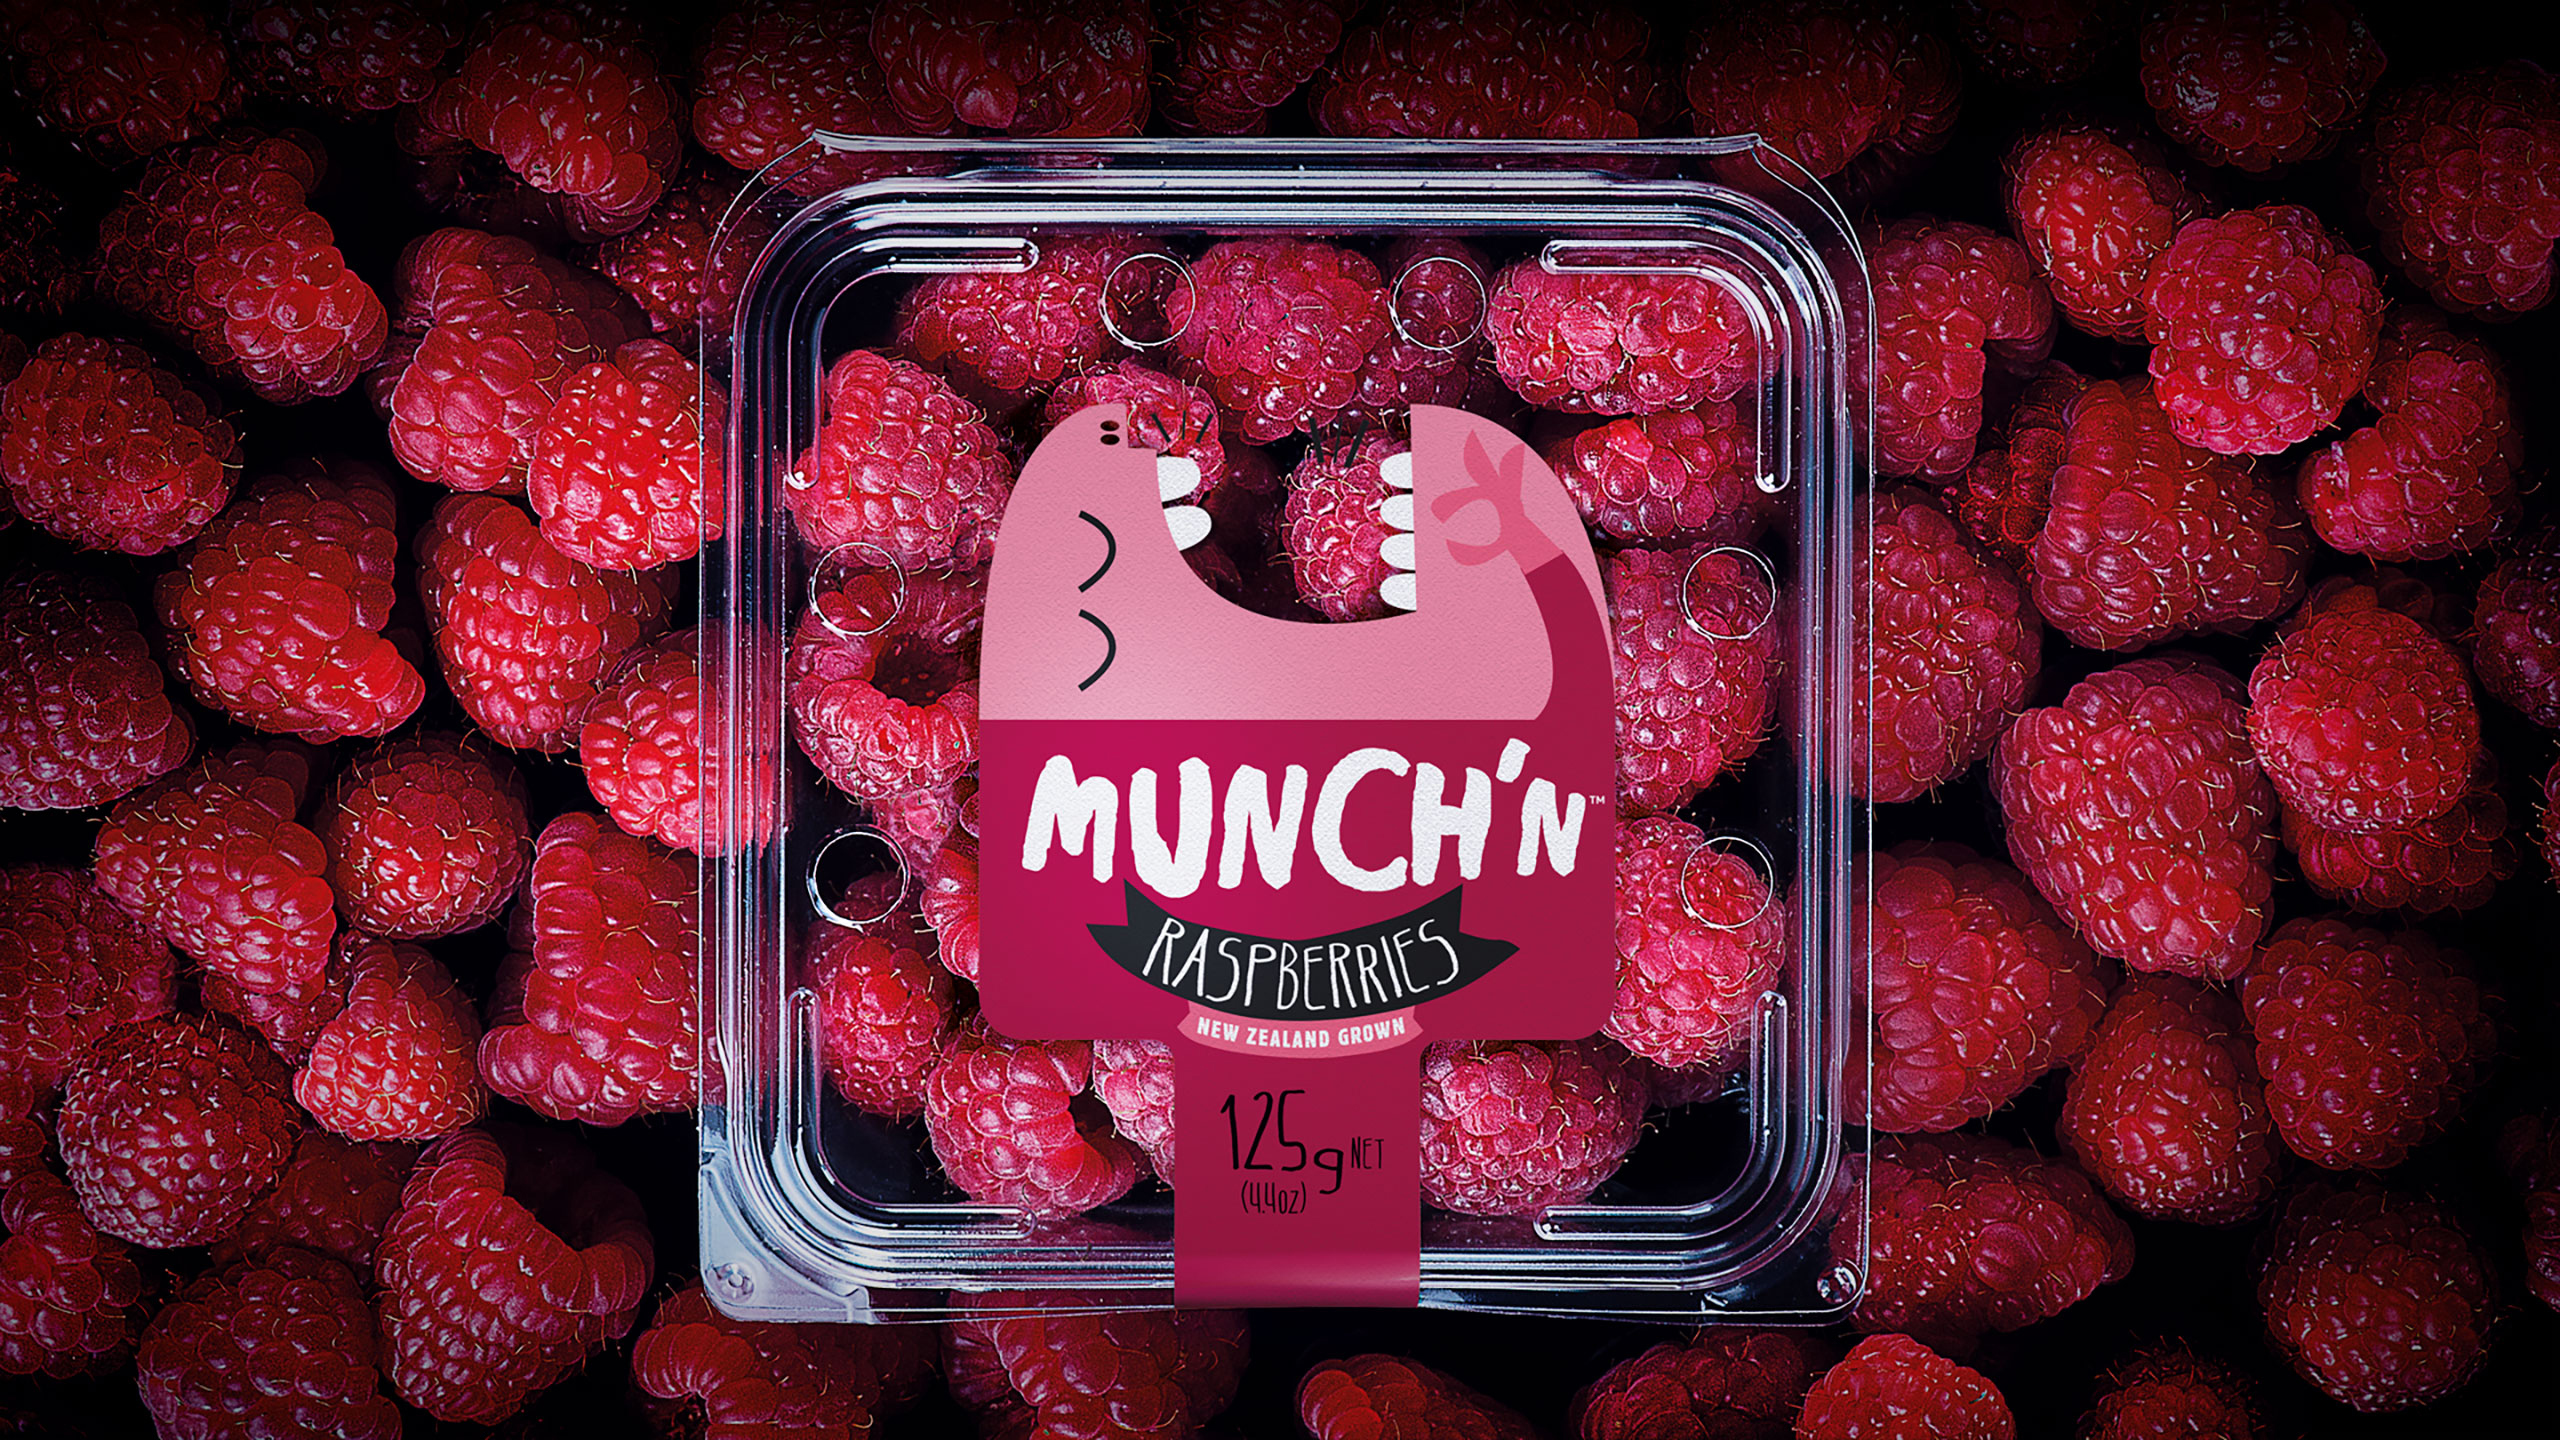 Packaging of Munch'n Raspberries on red raspberry background